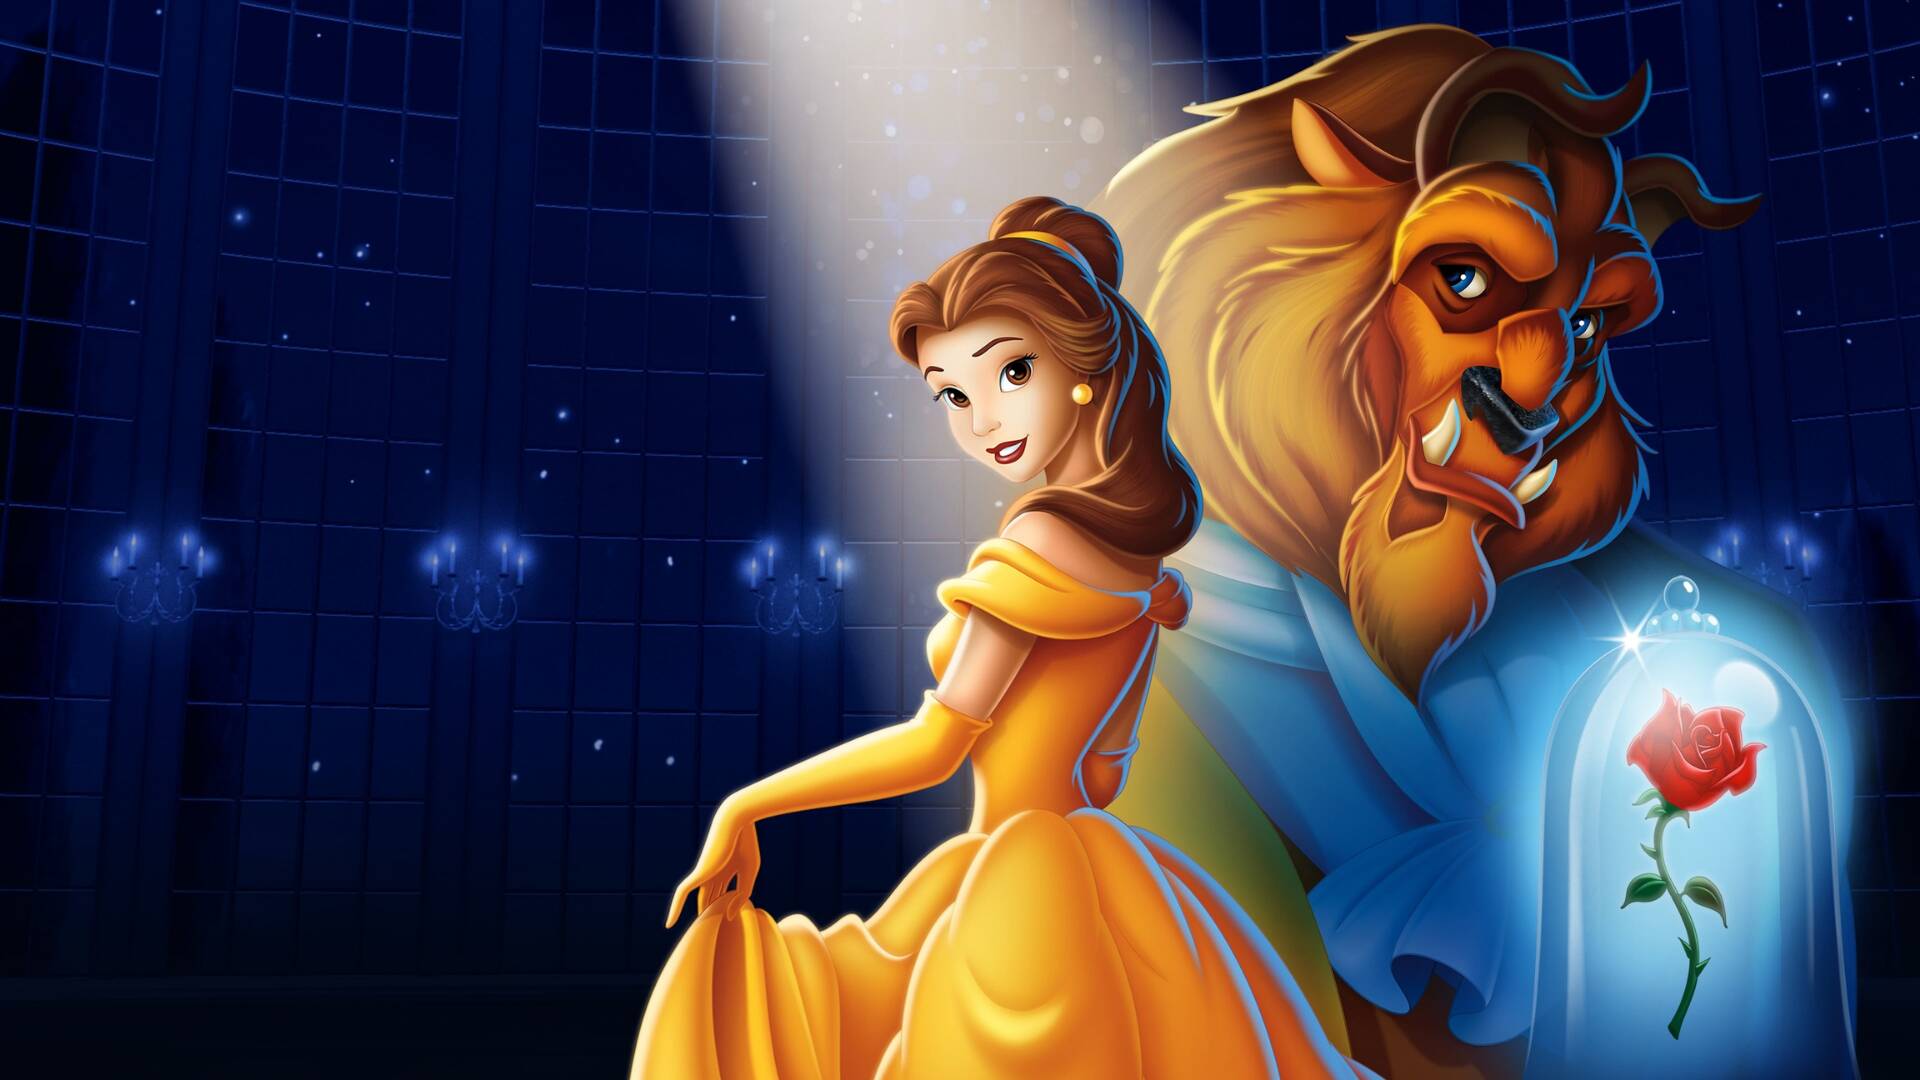 La Bella e la Bestia: trent'anni del capolavoro Disney - Tom's Hardware